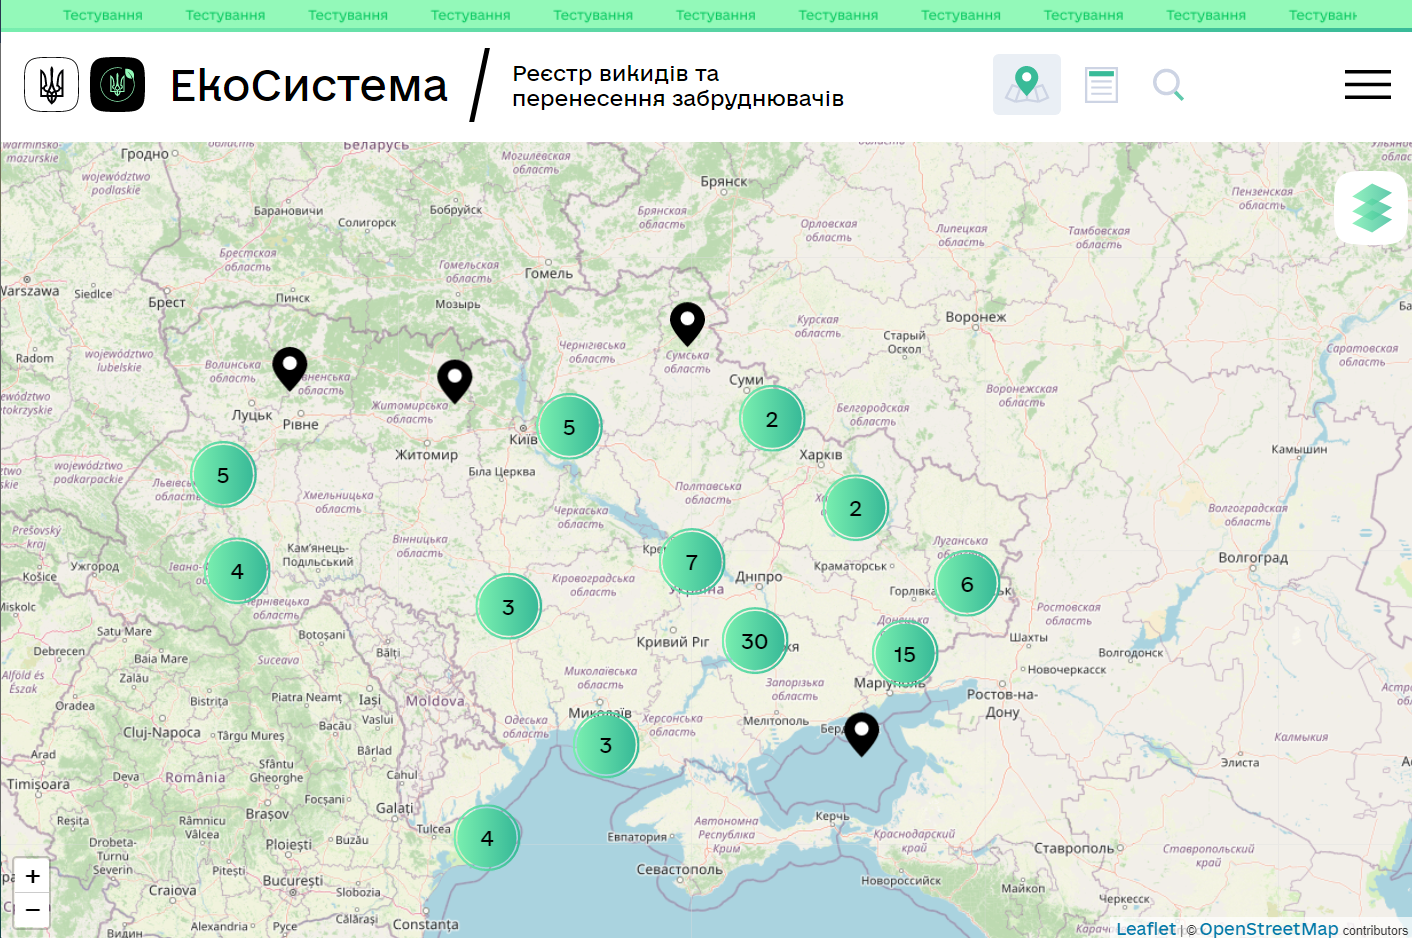 https://map.mepr.gov.ua/